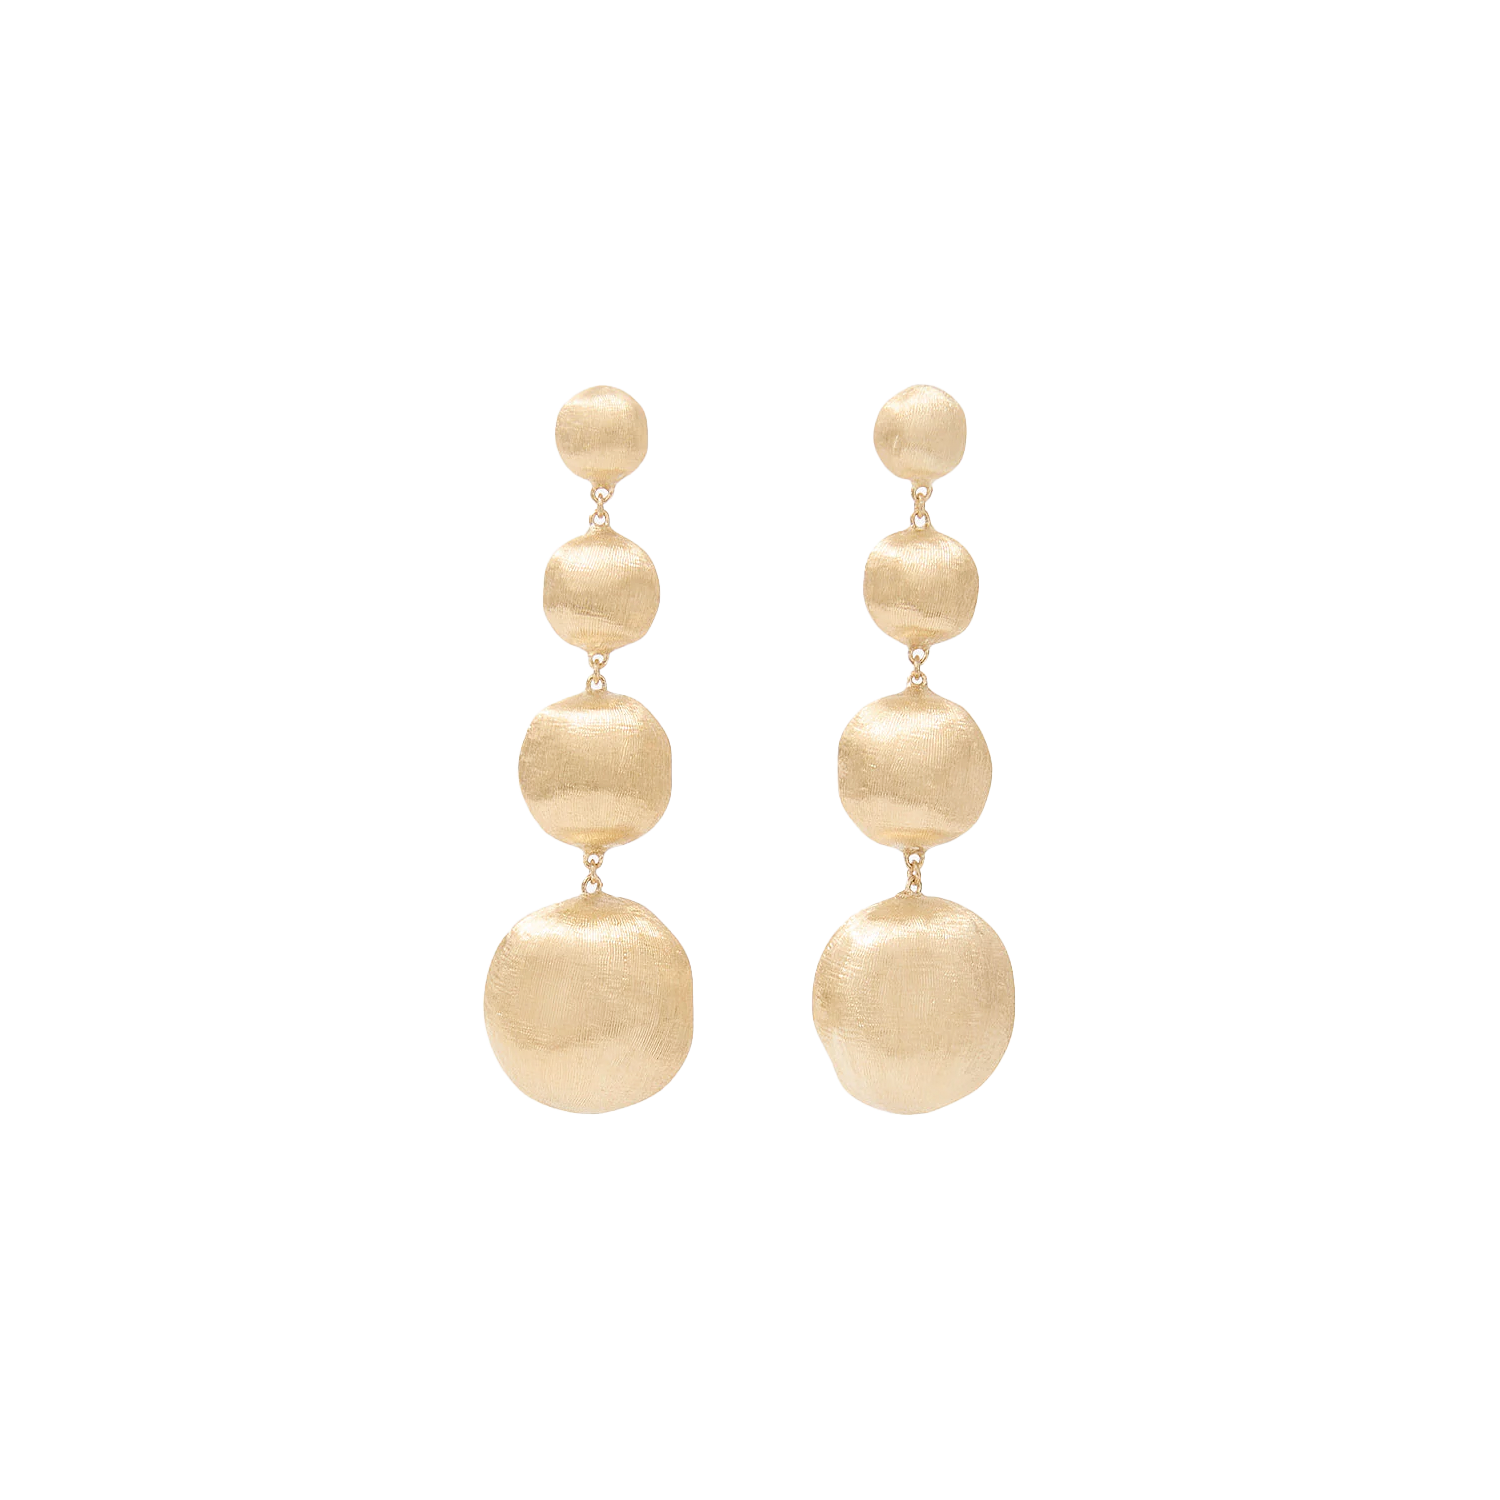 Gold bead chandelier earrings